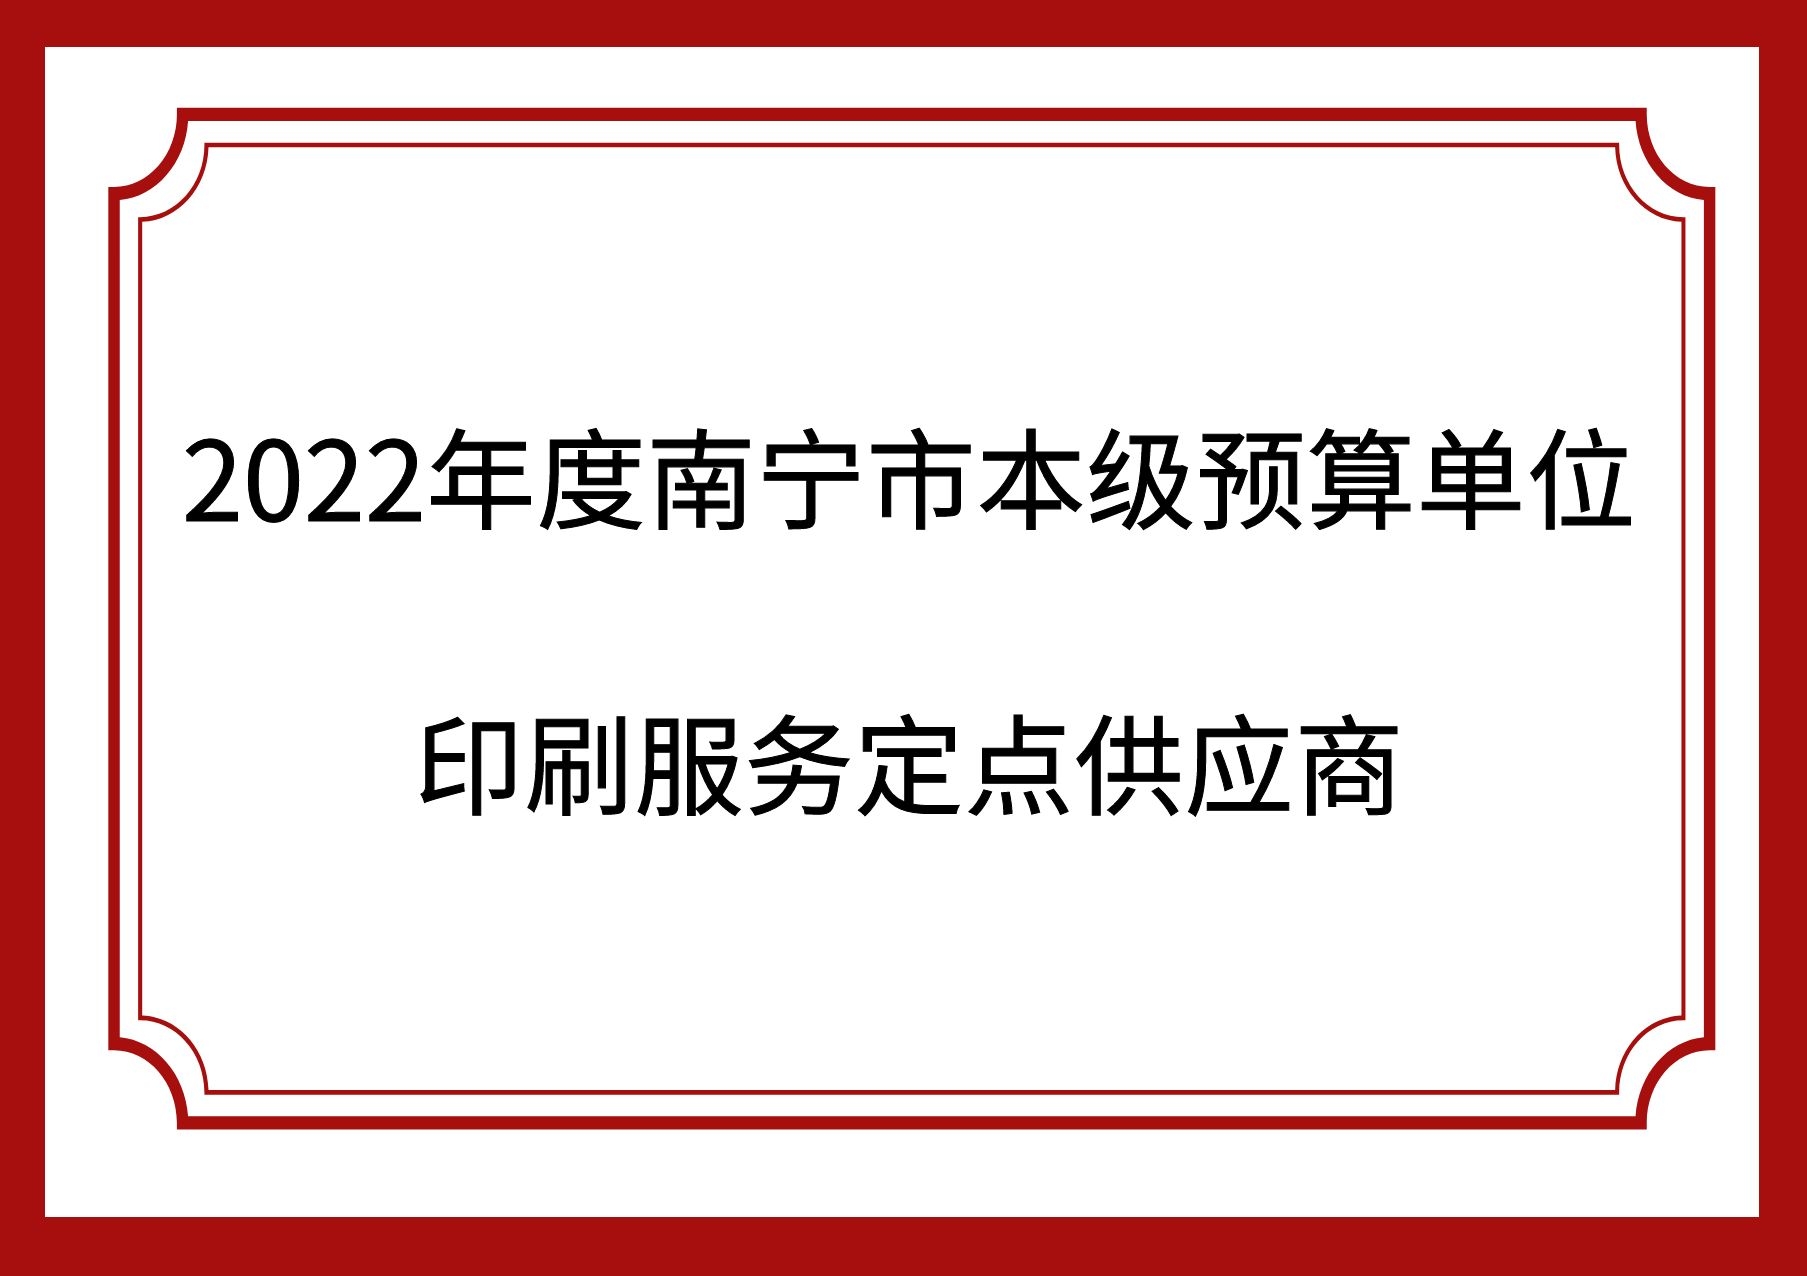 2022年度南宁市本级预算单位印刷服务定点供应商